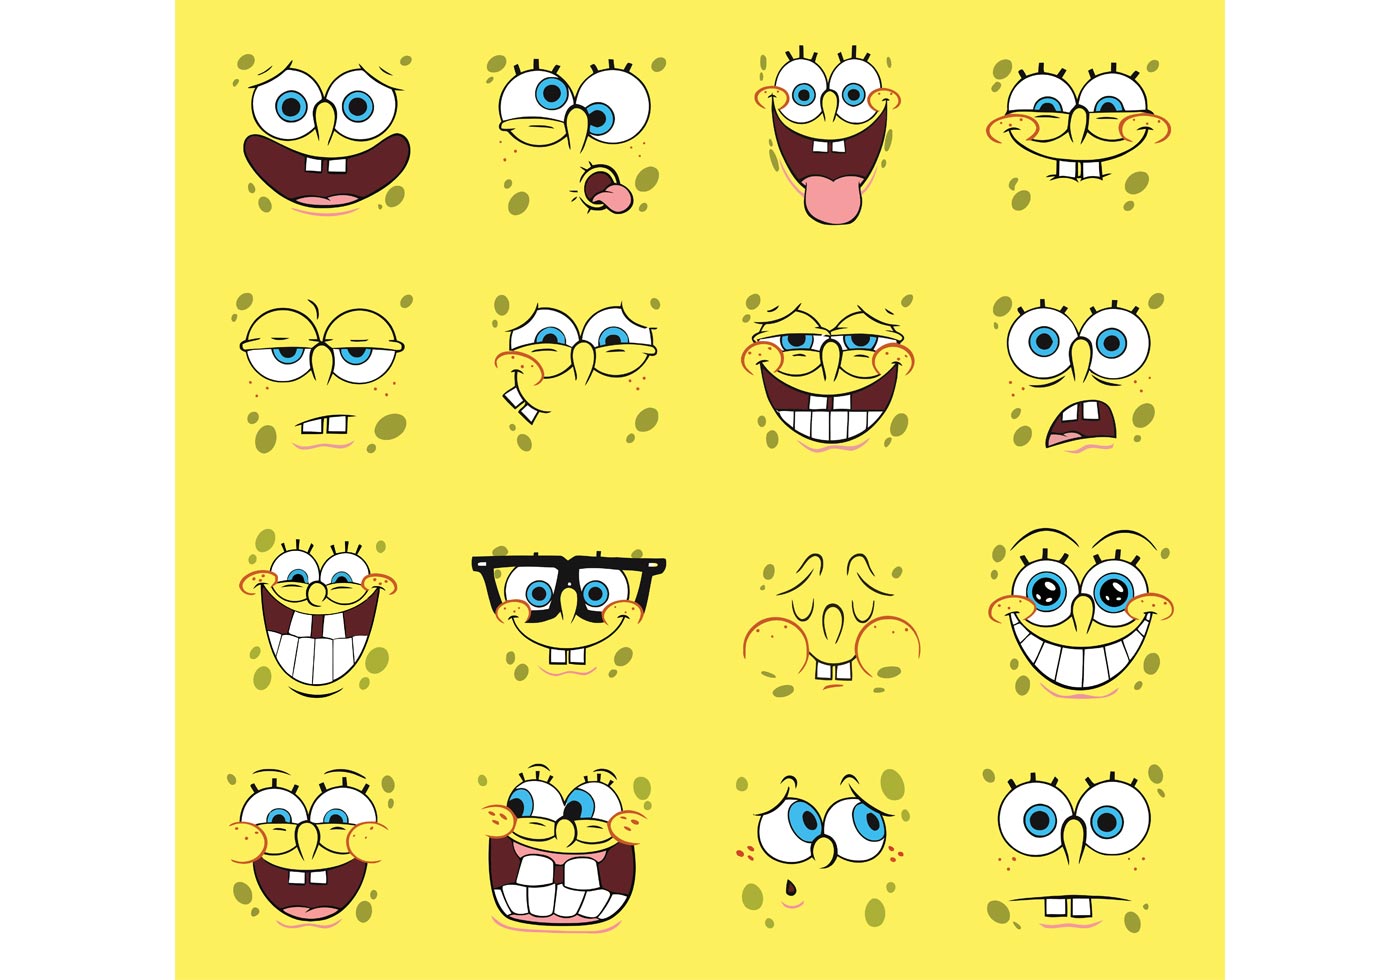 Download Spongebob Vector Cartoons 63391 - Download Free Vectors, Clipart Graphics & Vector Art